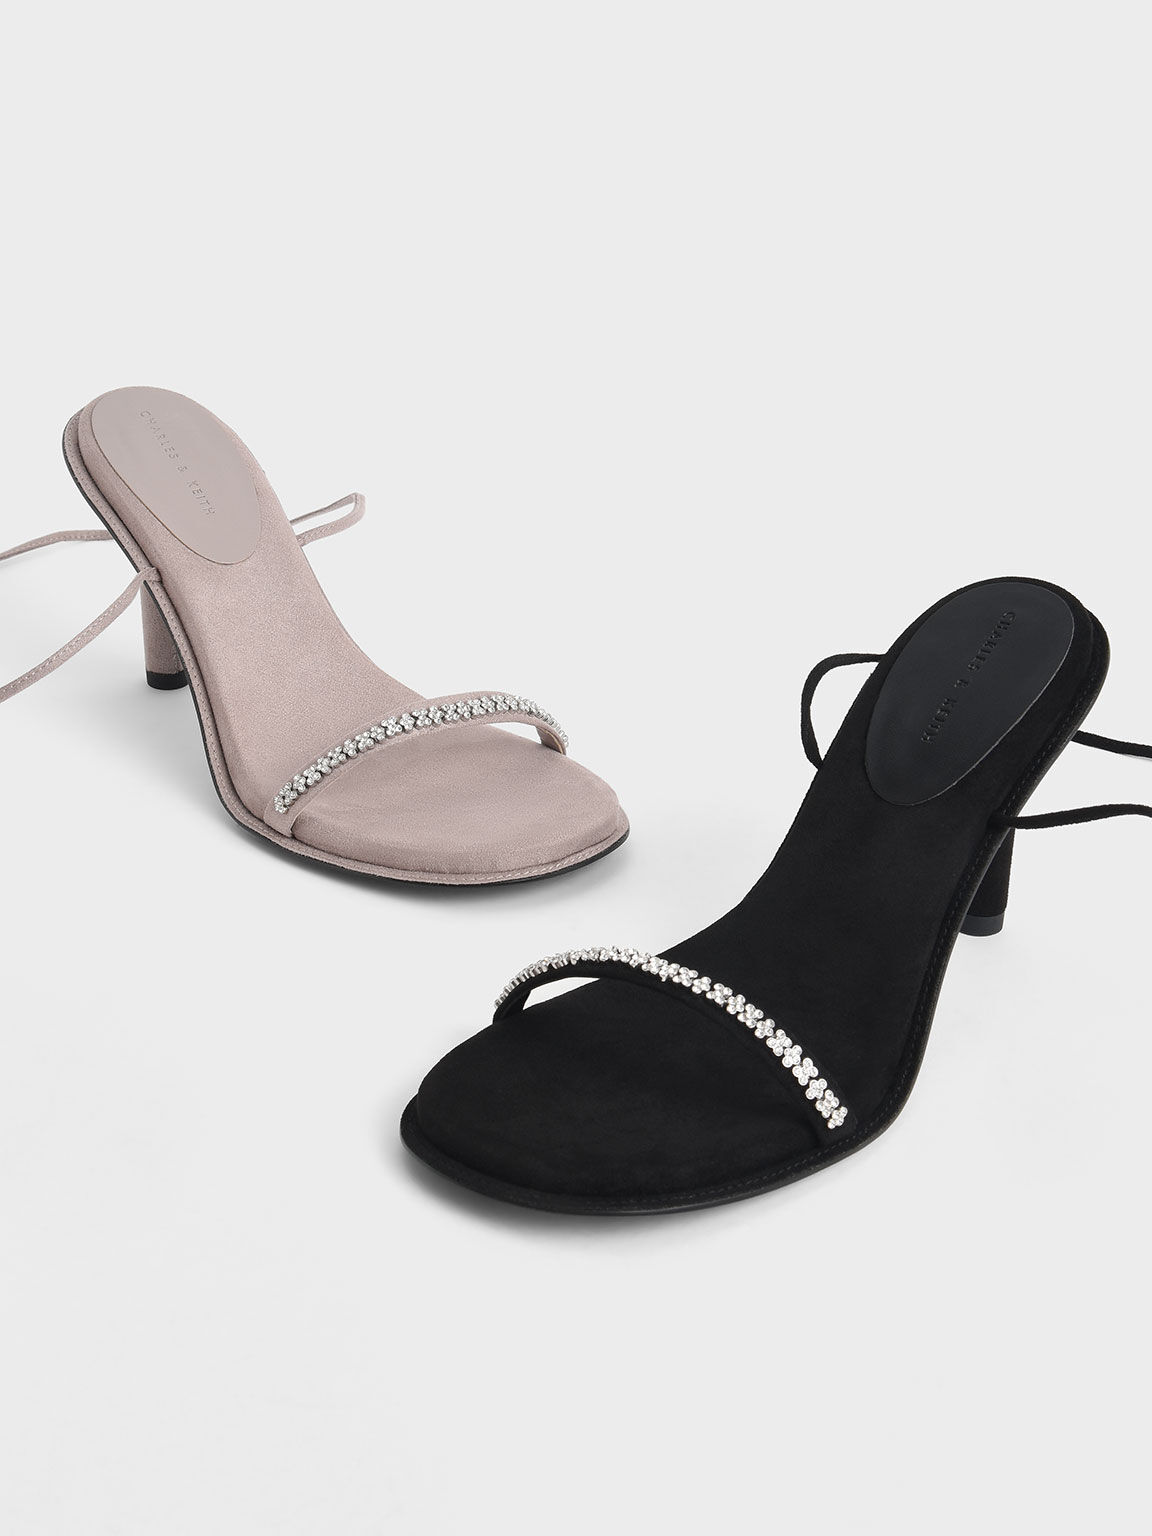 Gem-Embellished Tie-Around Stiletto Sandals, Black, hi-res